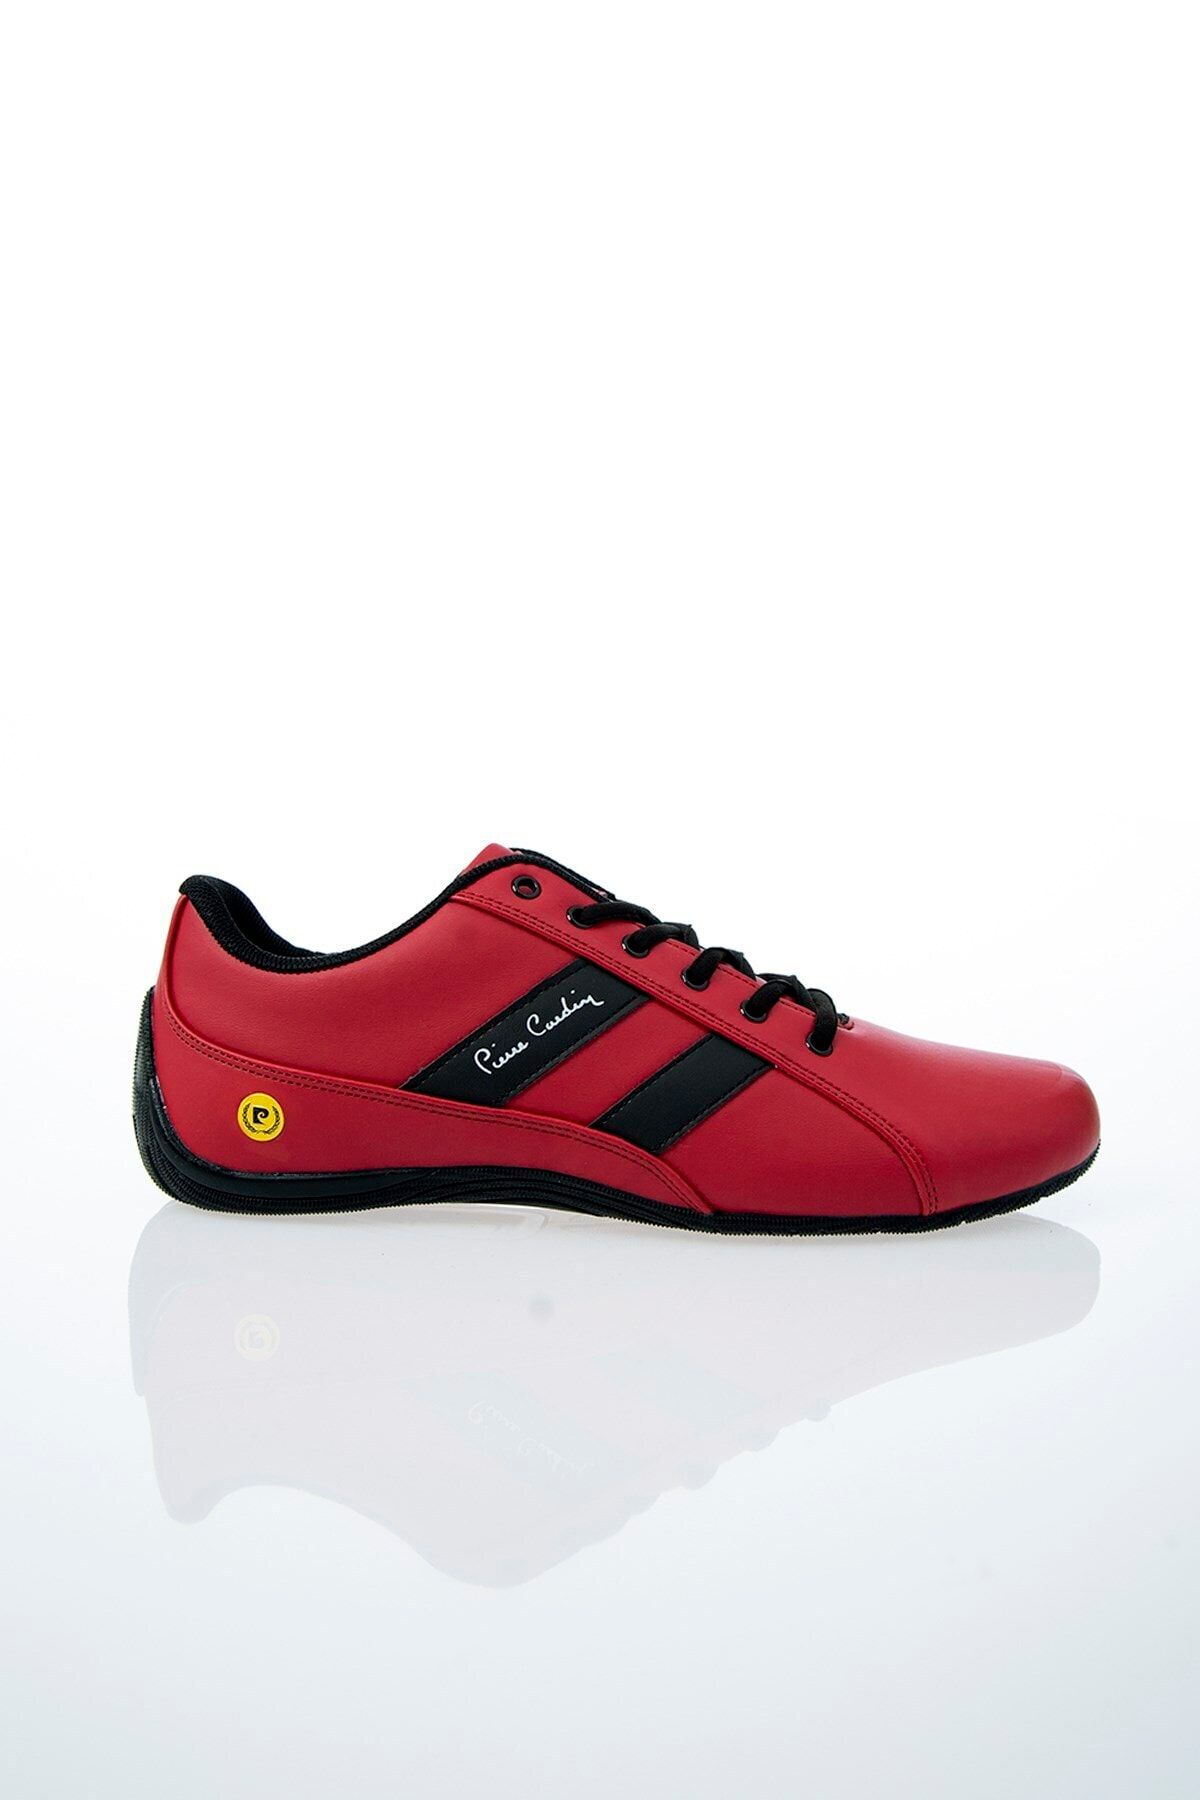 Pierre Cardin PC-30490 Kırmızı Erkek Spor Ayakkabı